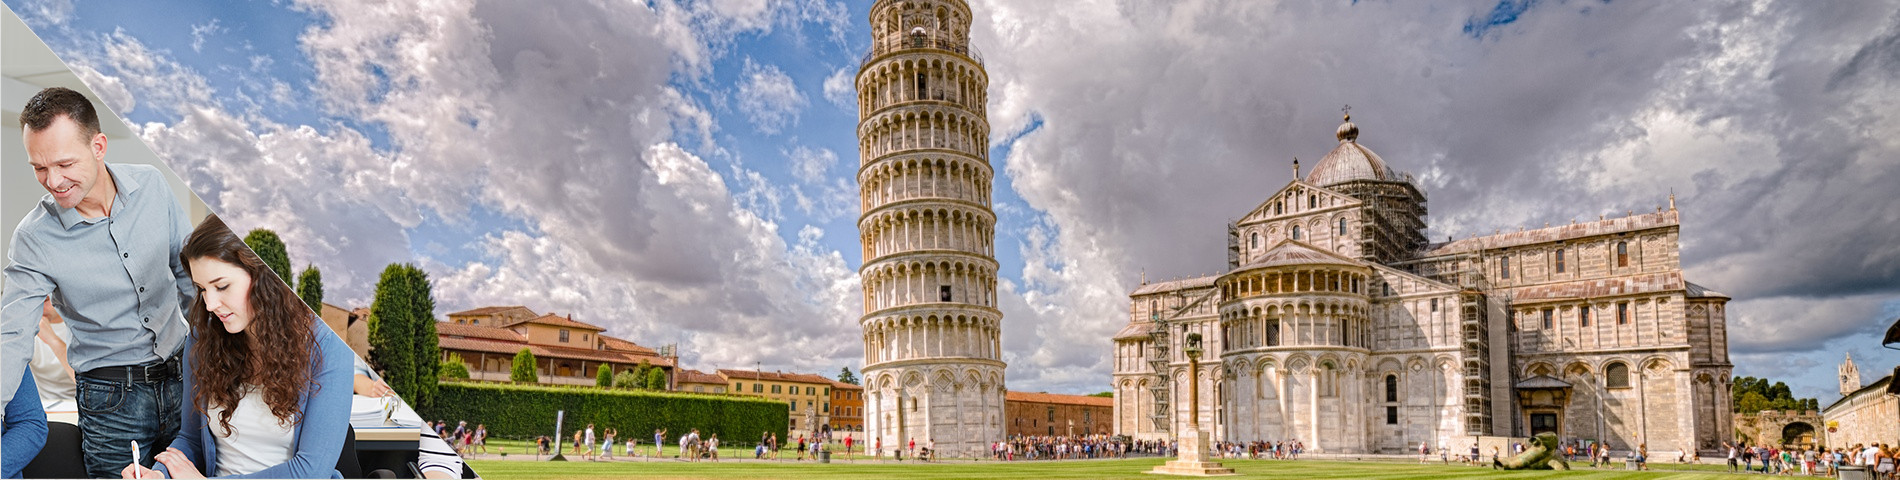 Pisa - Combinado: Clases en Grupo + Particulares